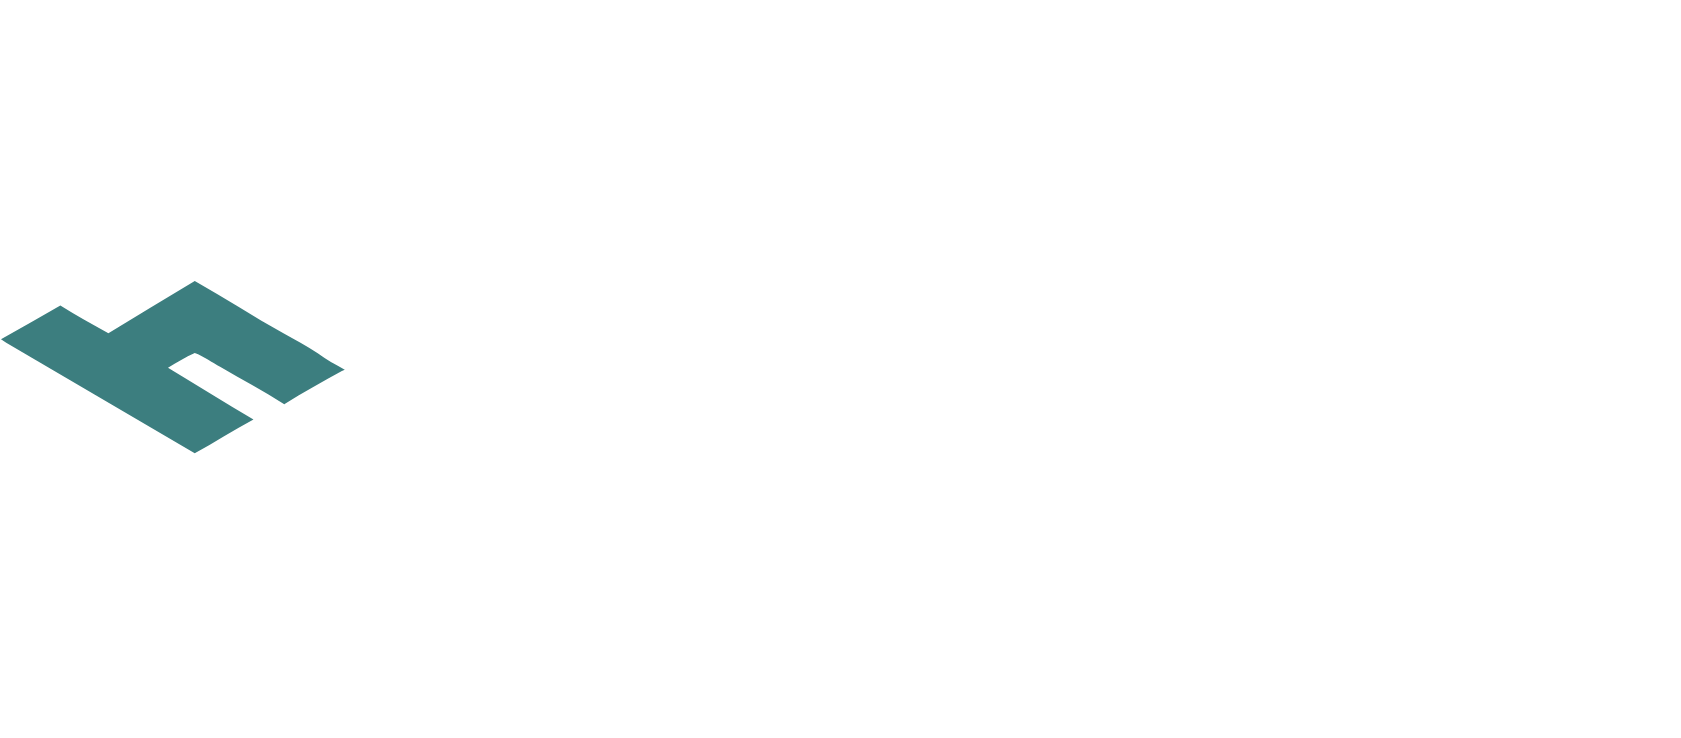 Hut 8 Mining logo large for dark backgrounds (transparent PNG)